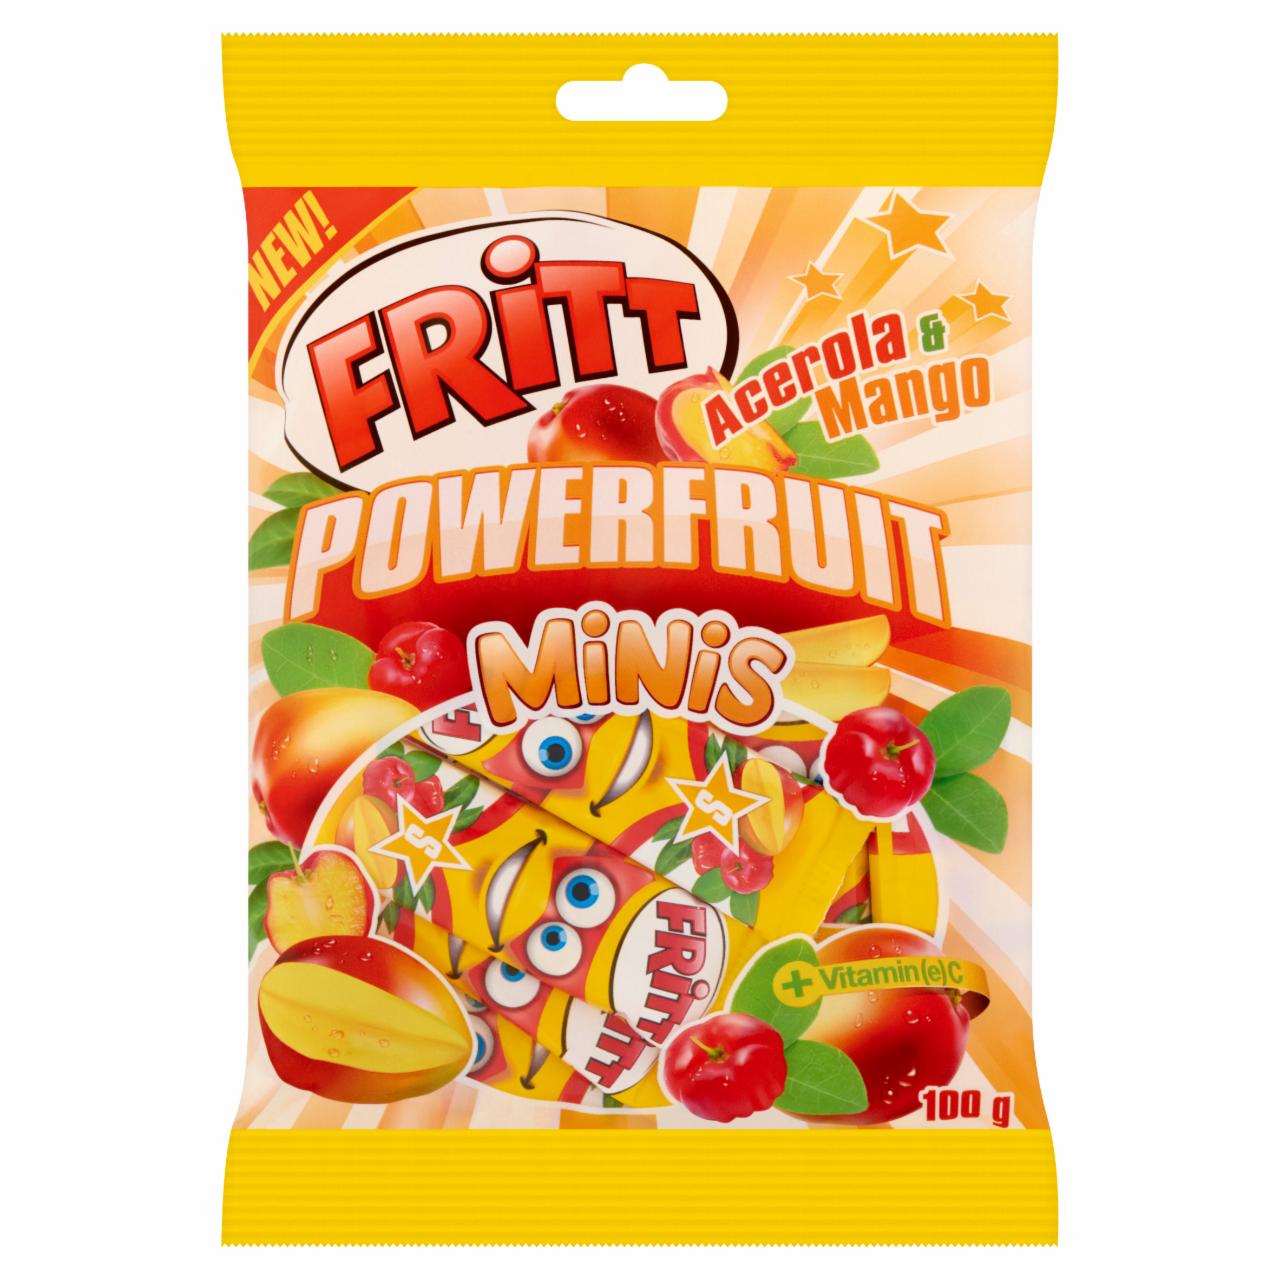 Képek - Fritt Powerfruit Minis acerola és mangó ízesítésű rágócukorka C-vitaminnal 100 g